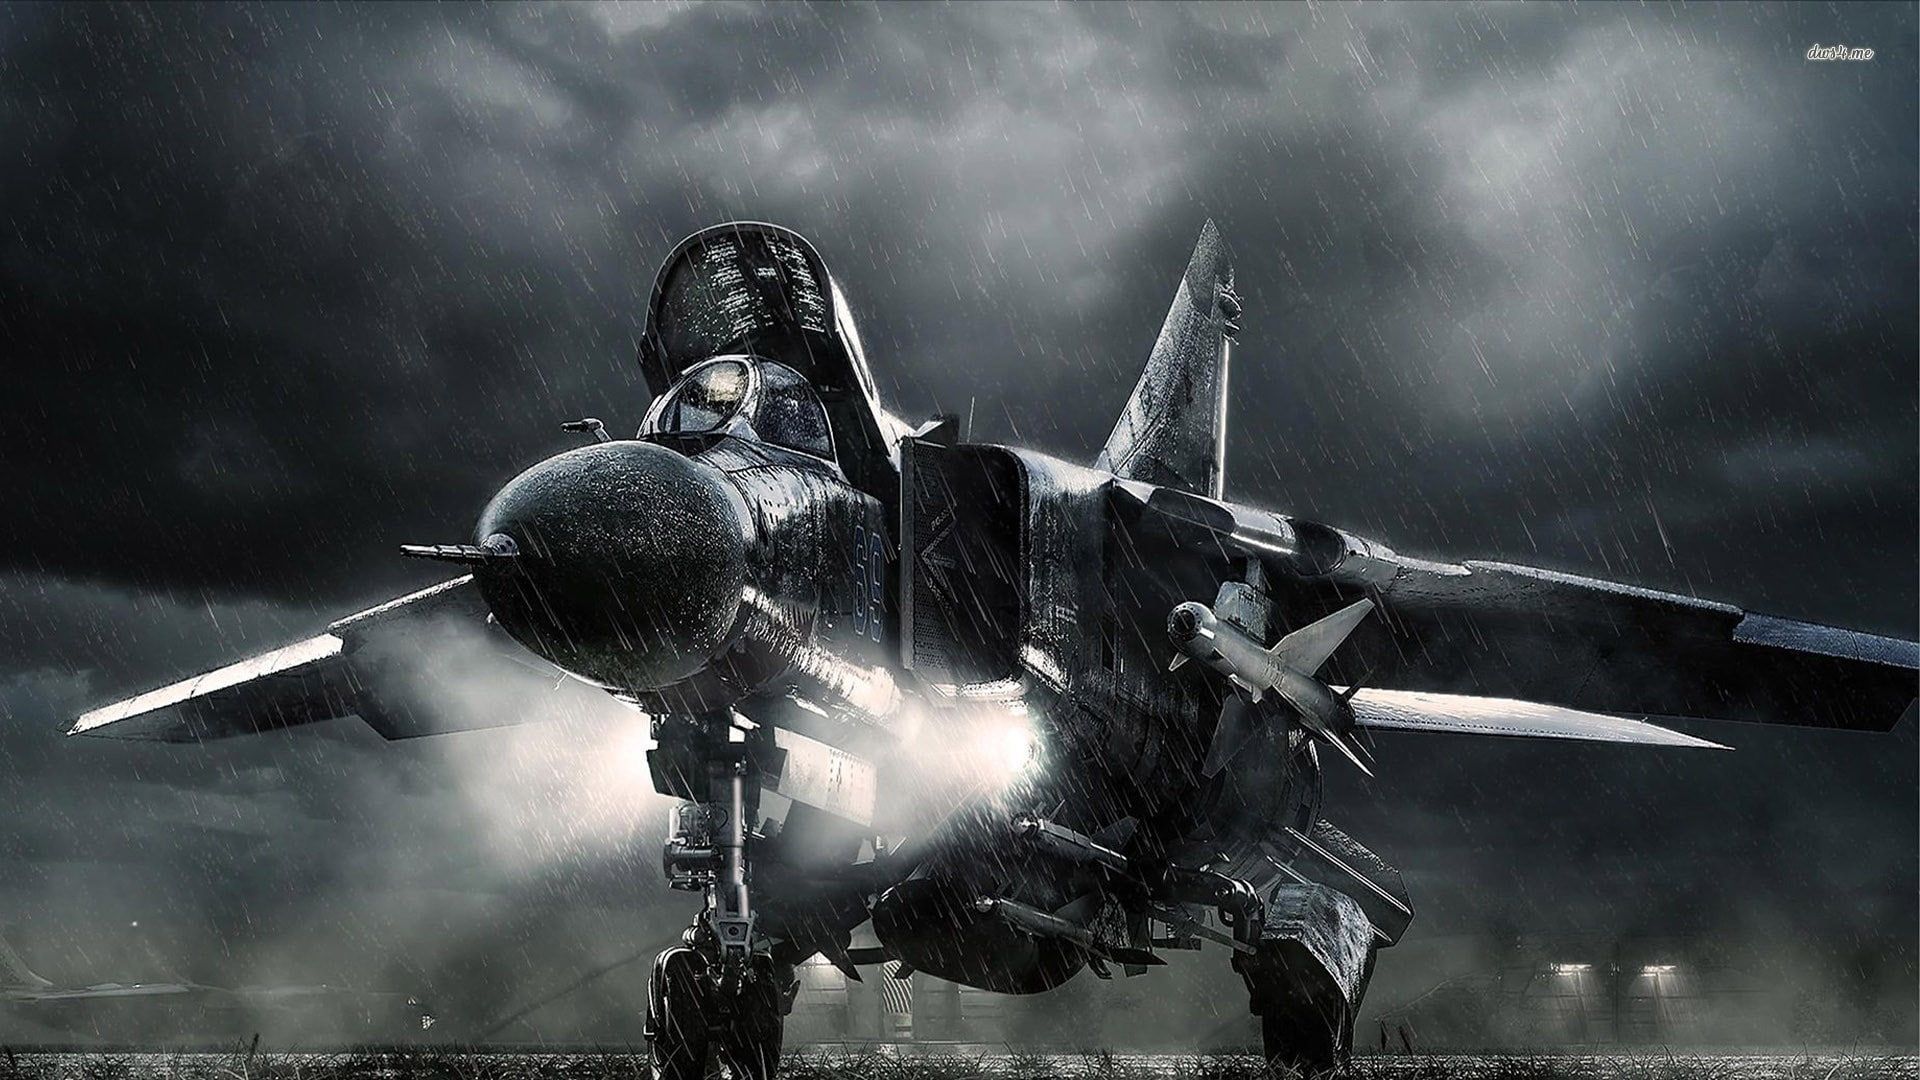 mikoyan gurevich mig 23 P #wallpaper #hdwallpaper #desktop. Aircraft art, Fighter jets, Russian military aircraft